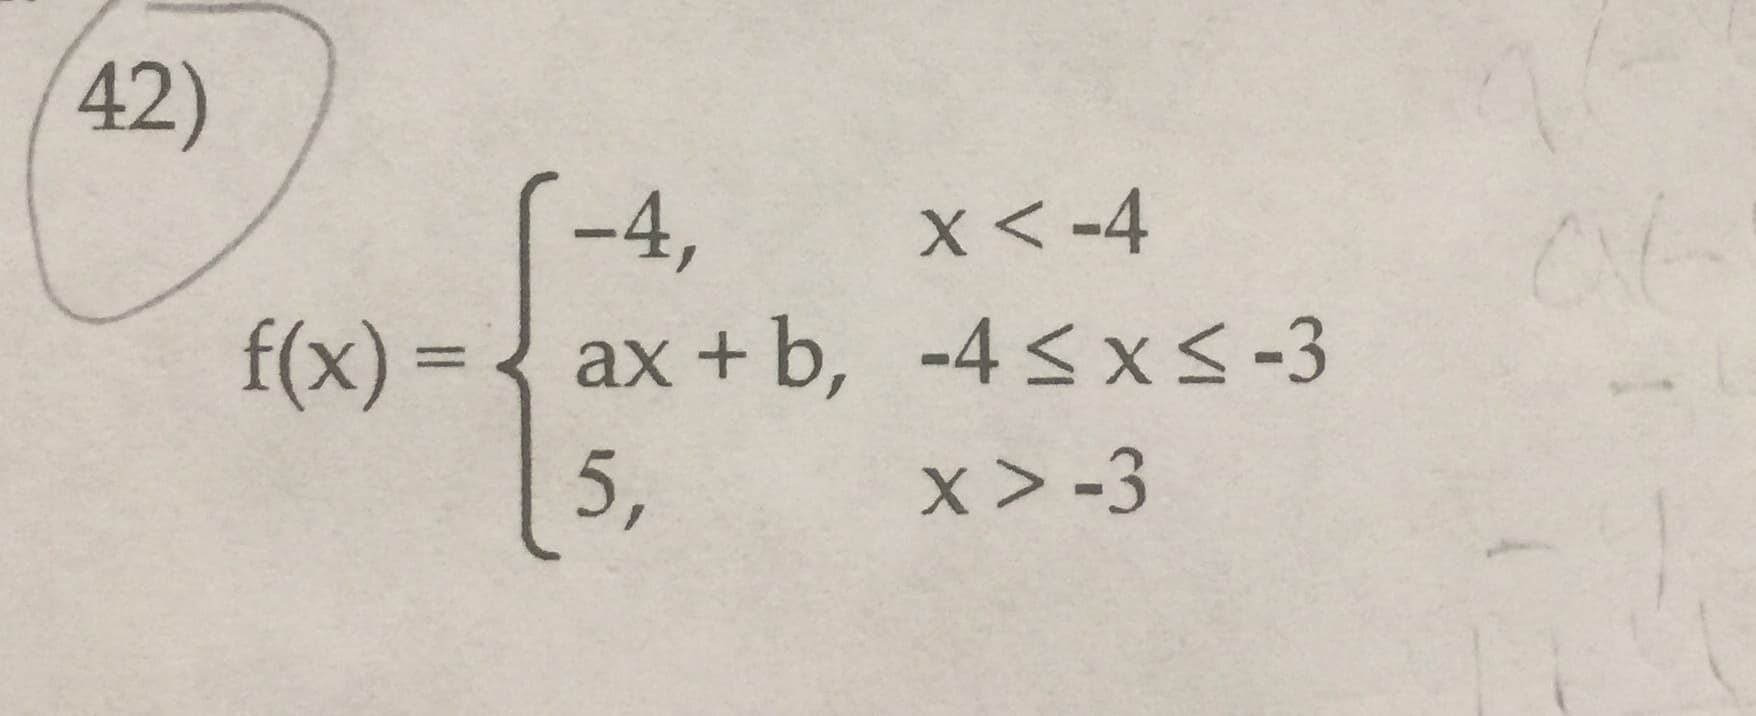 42)
(-4,
X-4
ax + b, -4s x< -3
f(x)=
5,
x > -3
